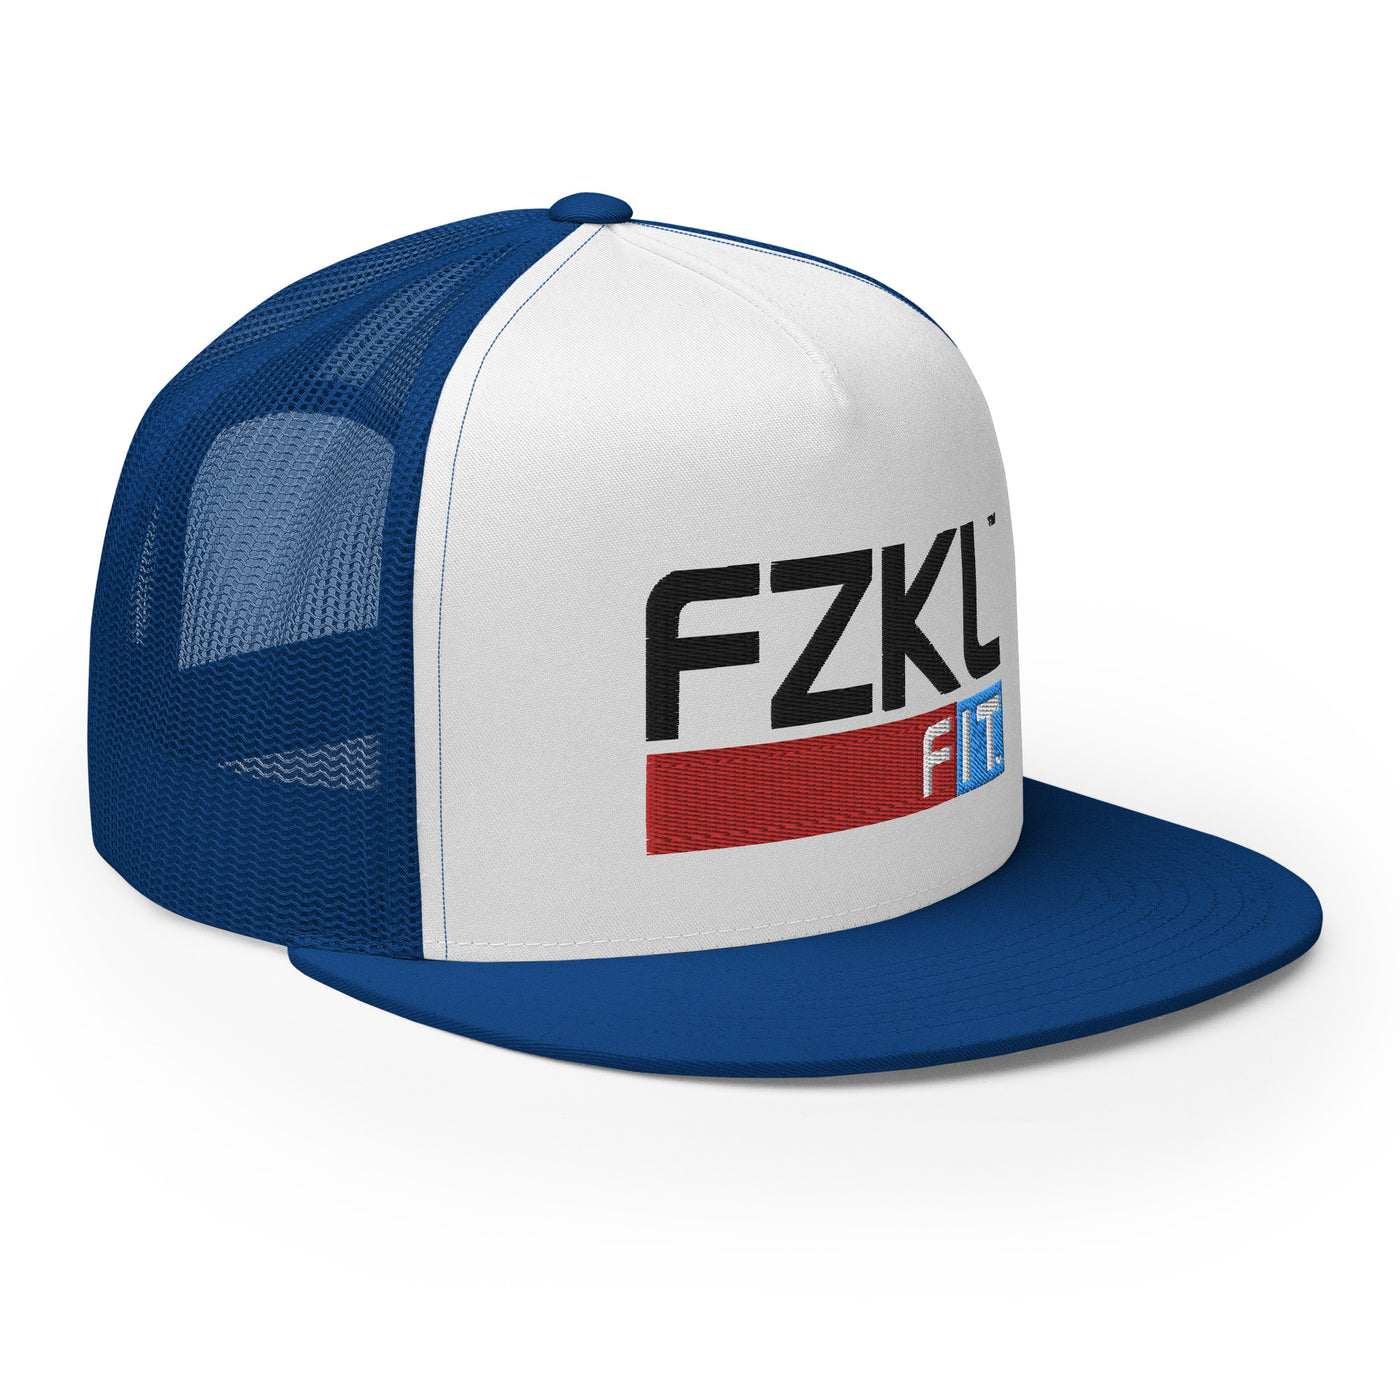 FZKL 'Bleed Strong' USA Trucker Cap